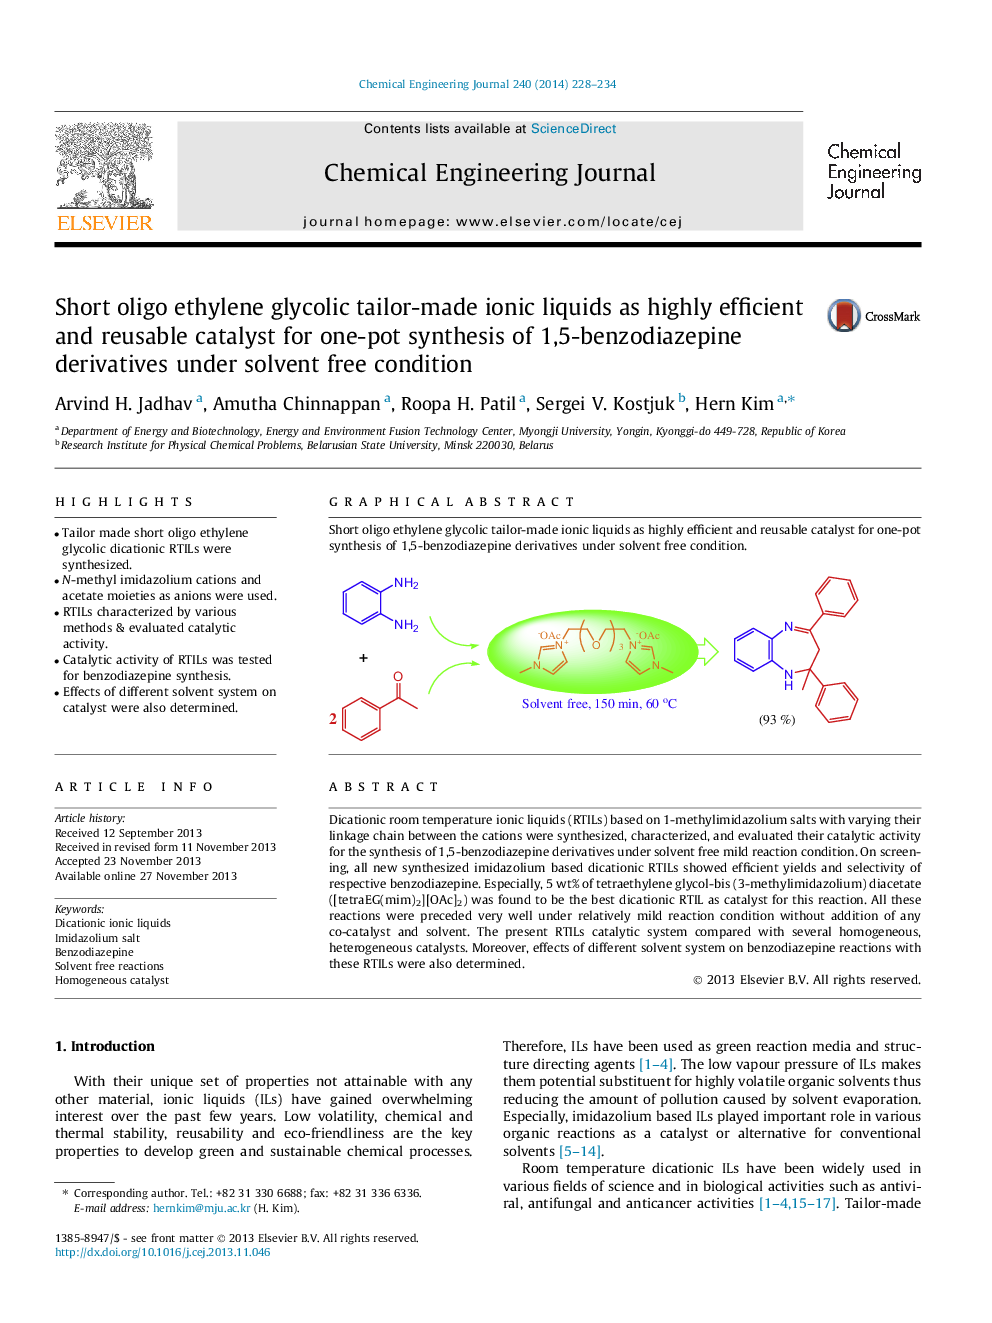 مایع یونی خالص ایلیو اتیلن گلیکولیک کوتاه به عنوان کاتالیزور بسیار کارآمد و قابل استفاده مجدد برای سنتز یک بطری مشتقات 1،5-بنزودیازپین تحت شرایط آزاد کننده حلال 